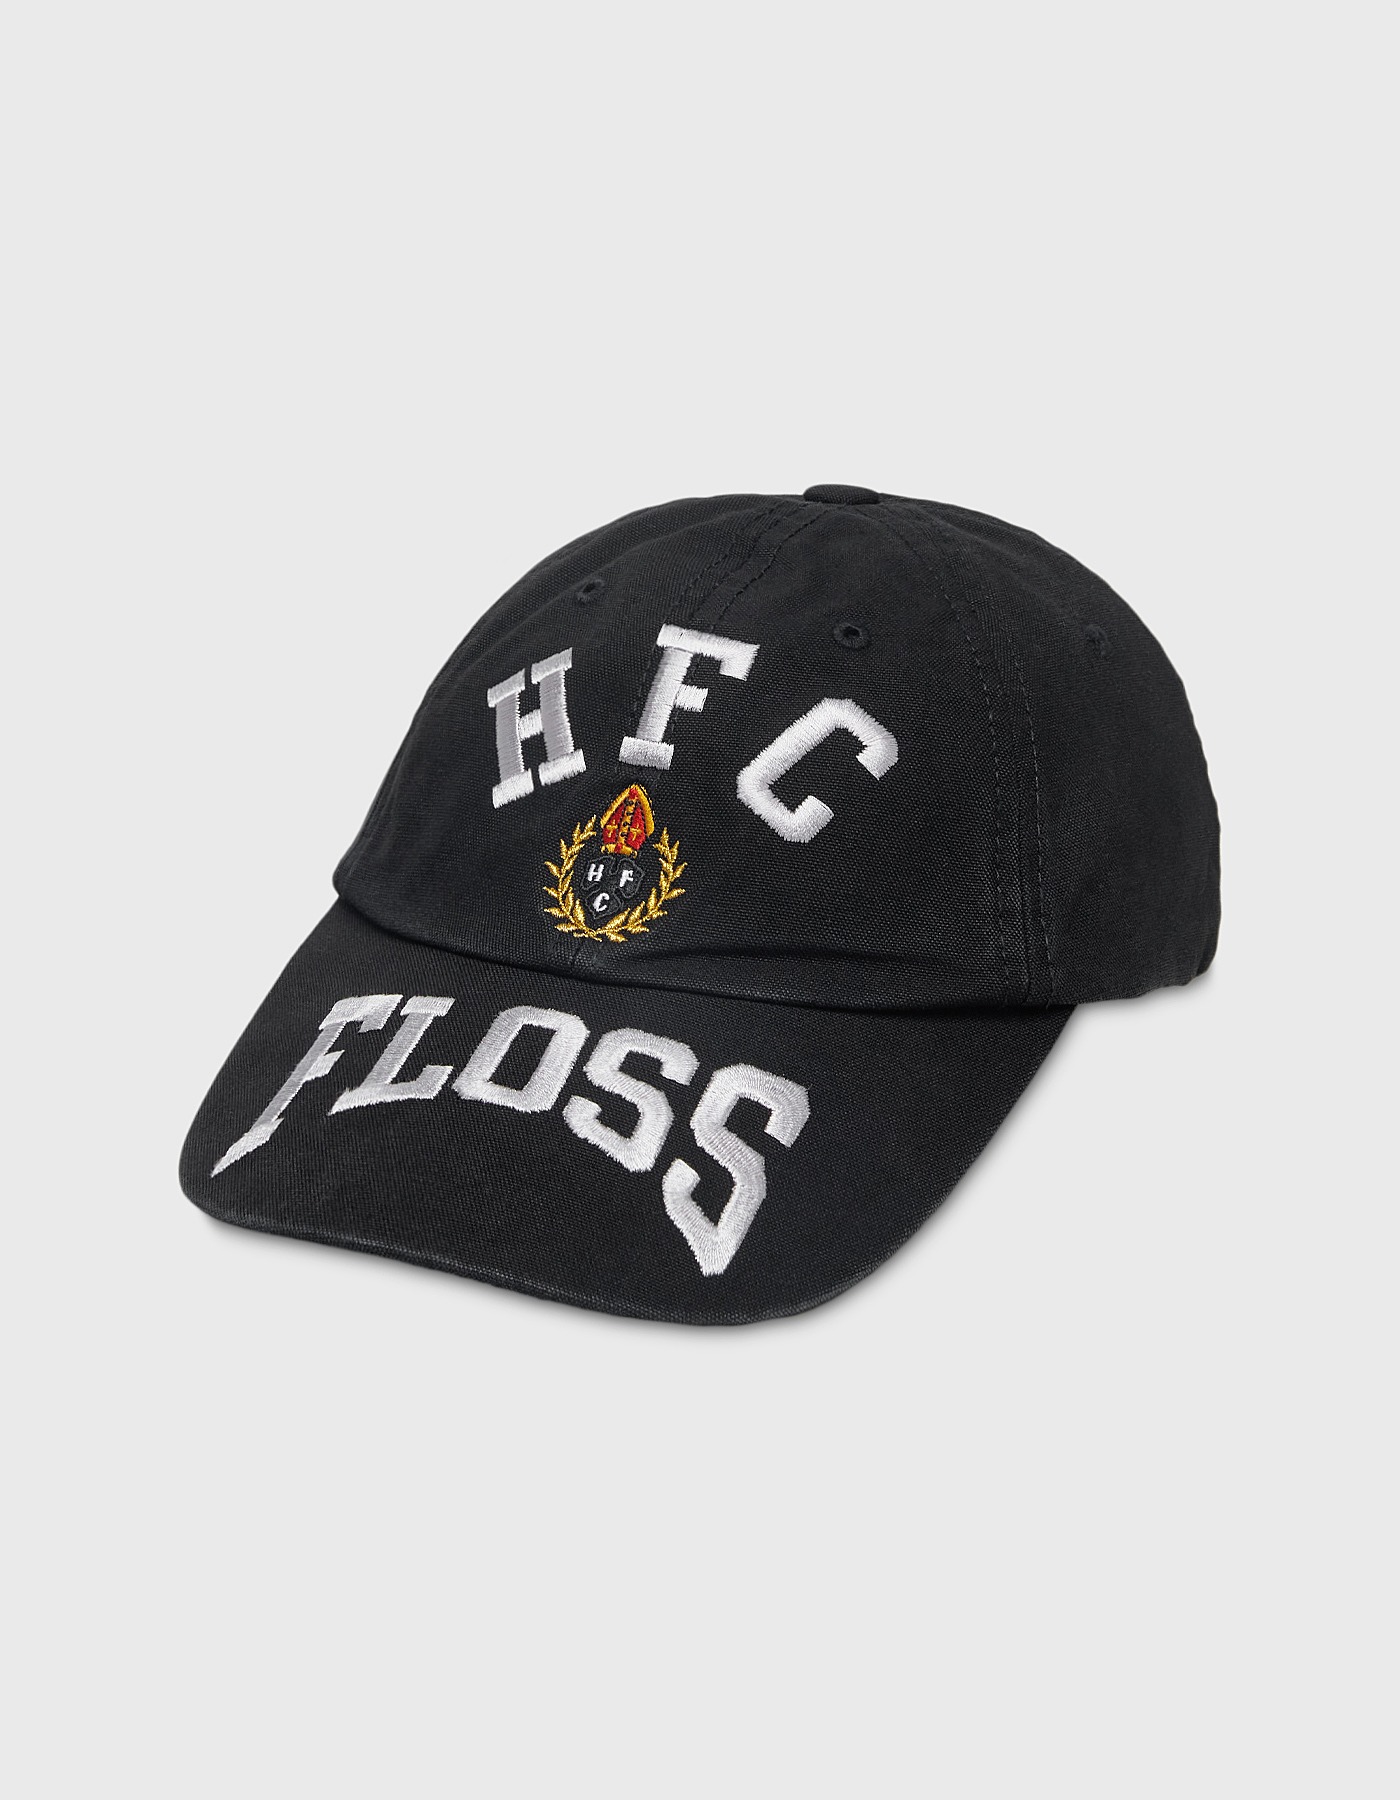 HFC CREST 6 PANEL CAP / Black